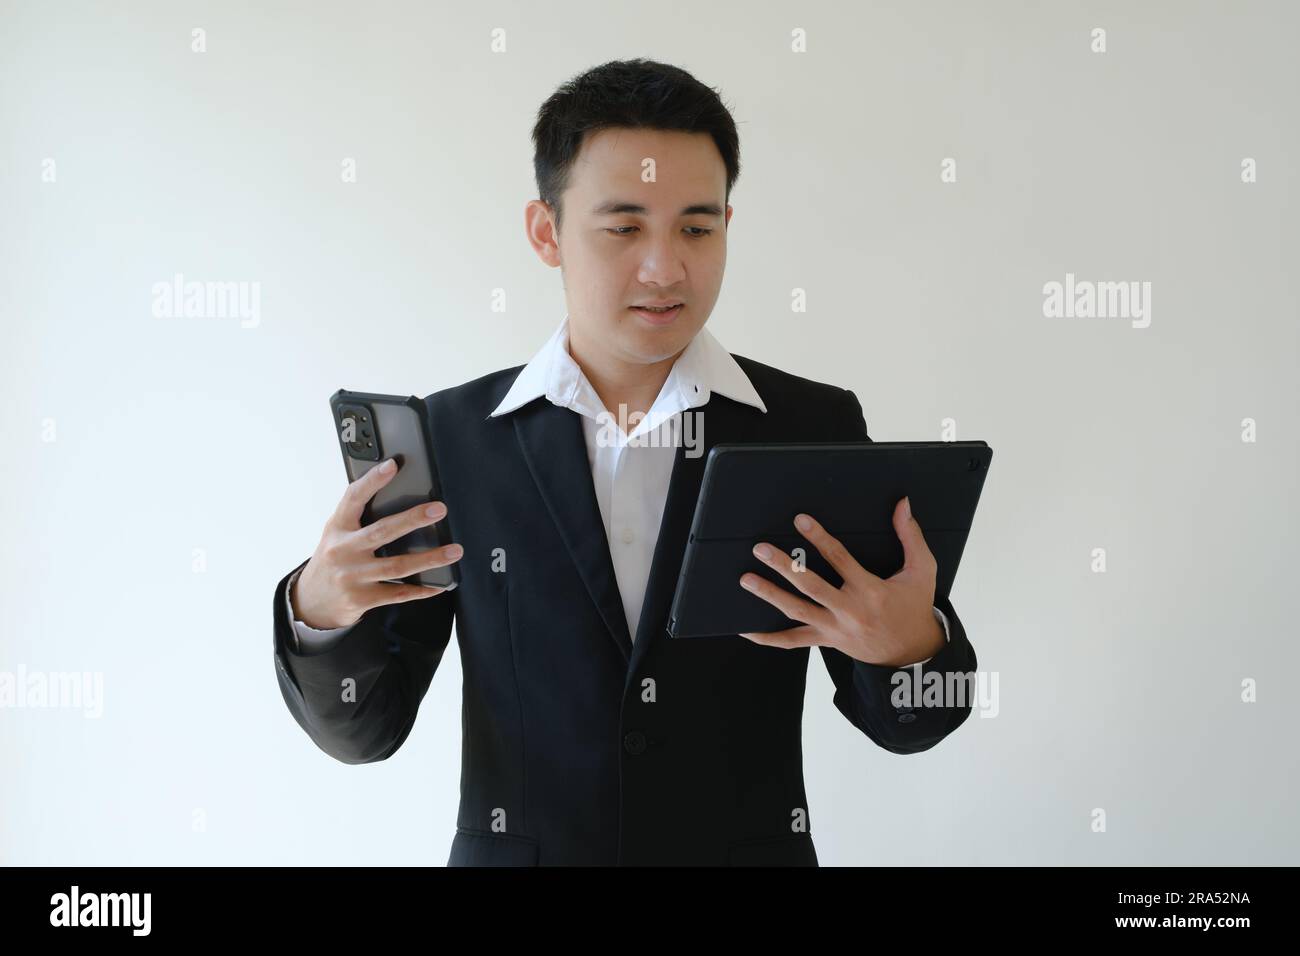 Ein junger asiatischer Geschäftsmann, der ein Smartphone und ein Tablet in der Hand hat und es sich ansieht. Isolierter weißer Hintergrund. Stockfoto